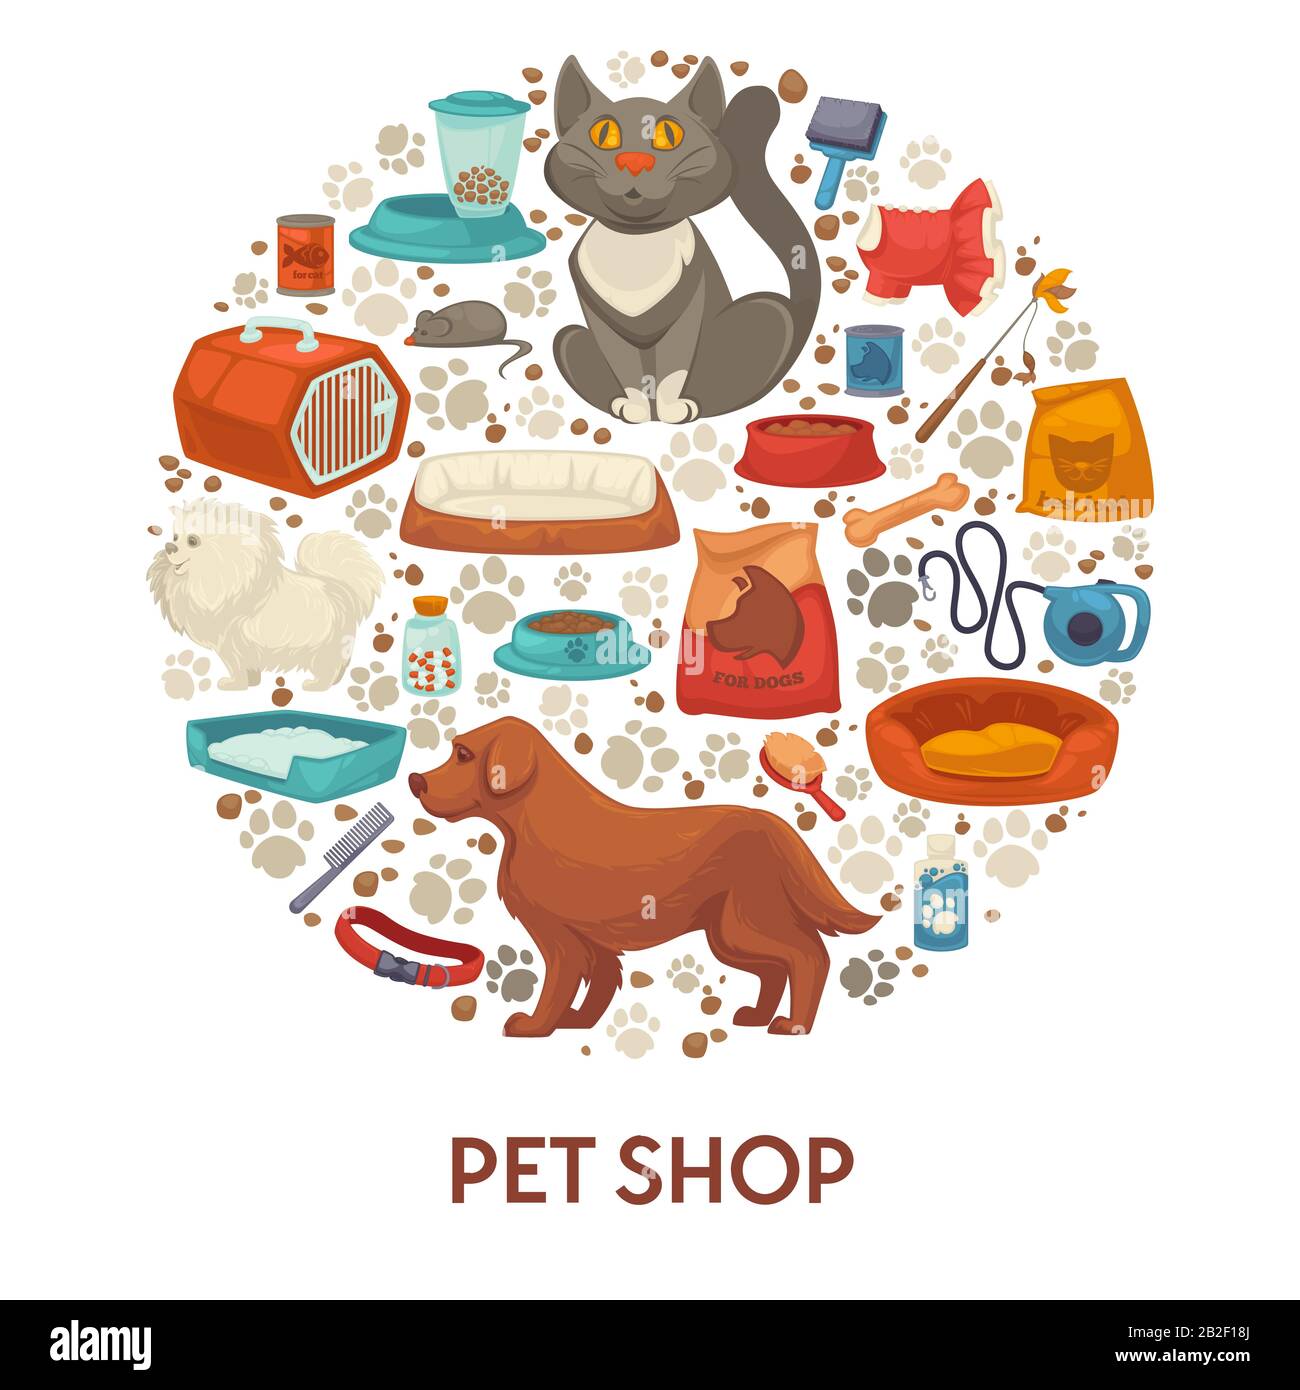 Modèle de bannière PET Shop avec accessoires de soin pour chien et chat  Image Vectorielle Stock - Alamy